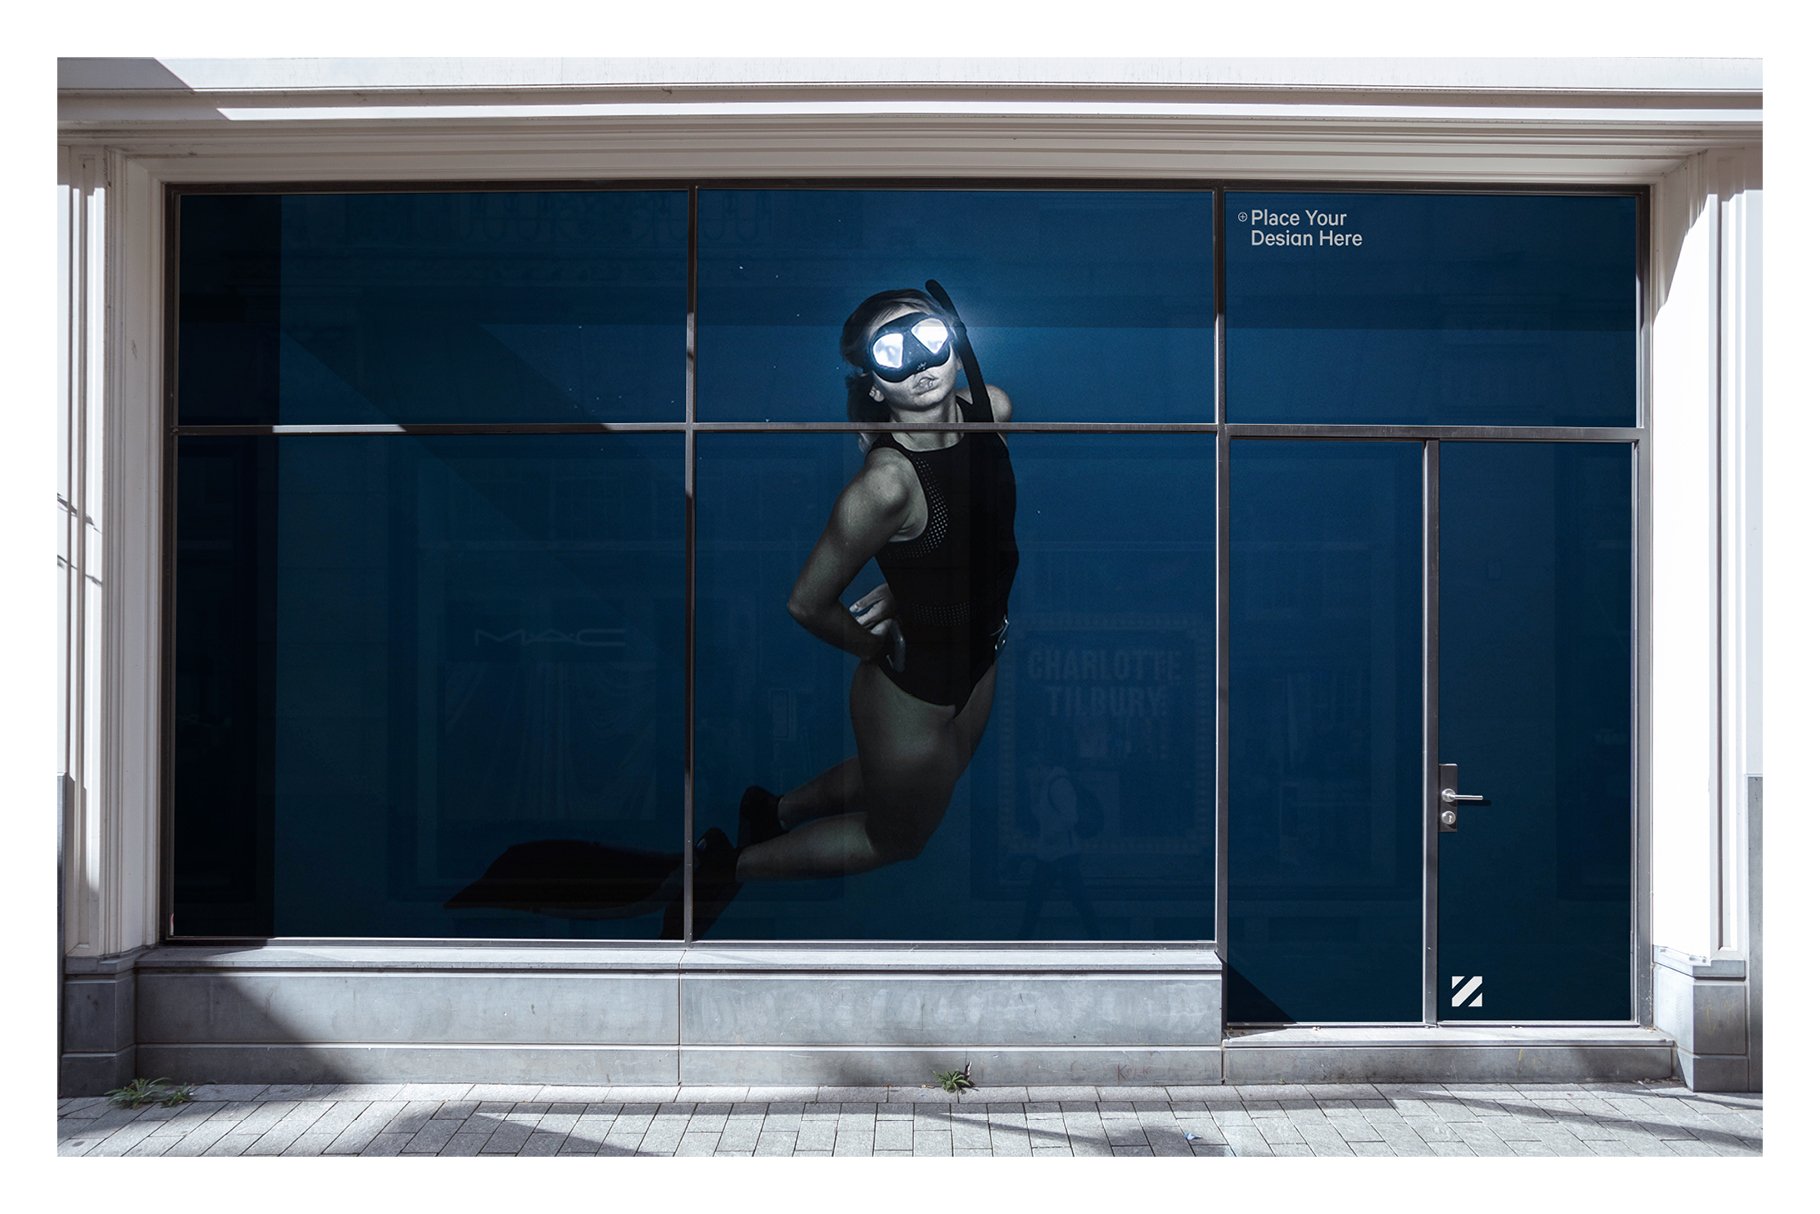 城市店面玻璃窗户贴纸海报广告设计展示贴图样机 City Retail Shop Facade Mockup